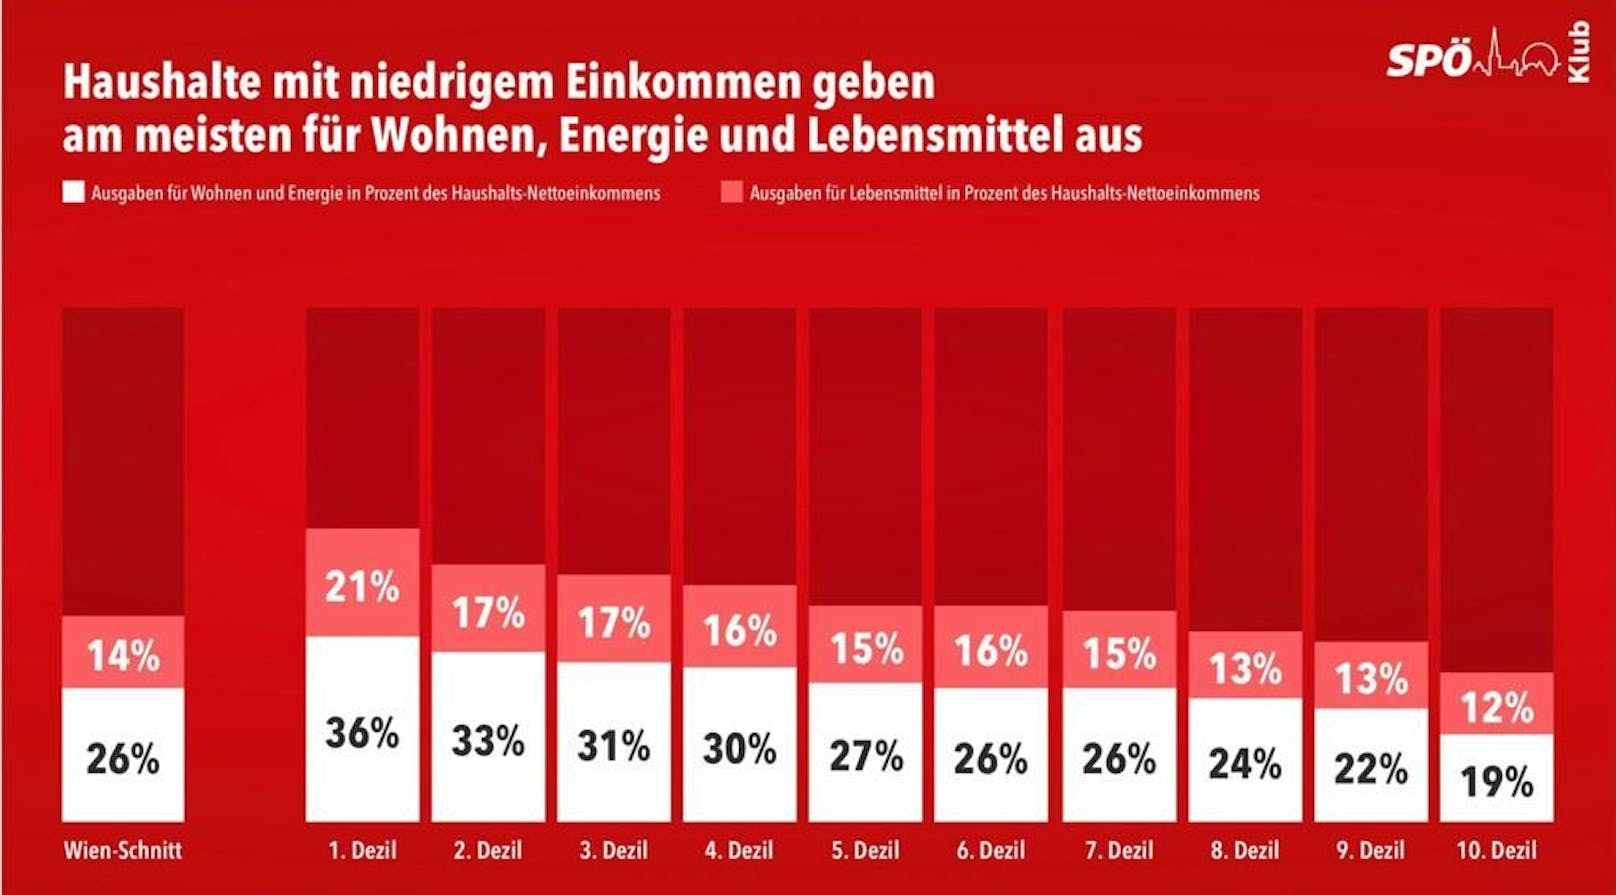 Die untersten Einkommen Wiens sind laut SPÖ Wien von Preisschwankungen von Wohn-, Energie- und Lebensmittelkosten besonders betroffen.